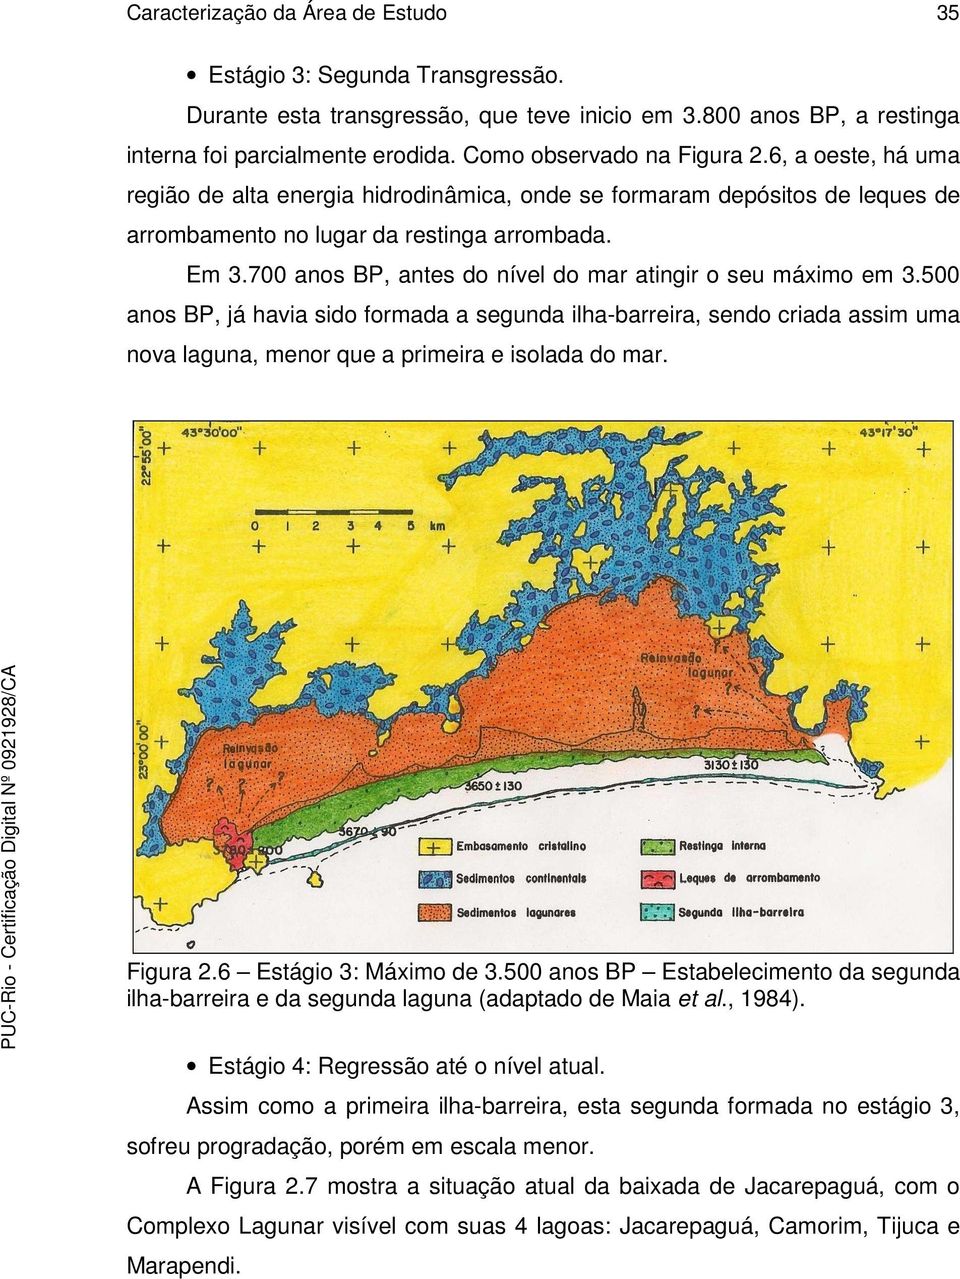 700 anos BP, antes do nível do mar atingir o seu máximo em 3.500 anos BP, já havia sido formada a segunda ilha-barreira, sendo criada assim uma nova laguna, menor que a primeira e isolada do mar.